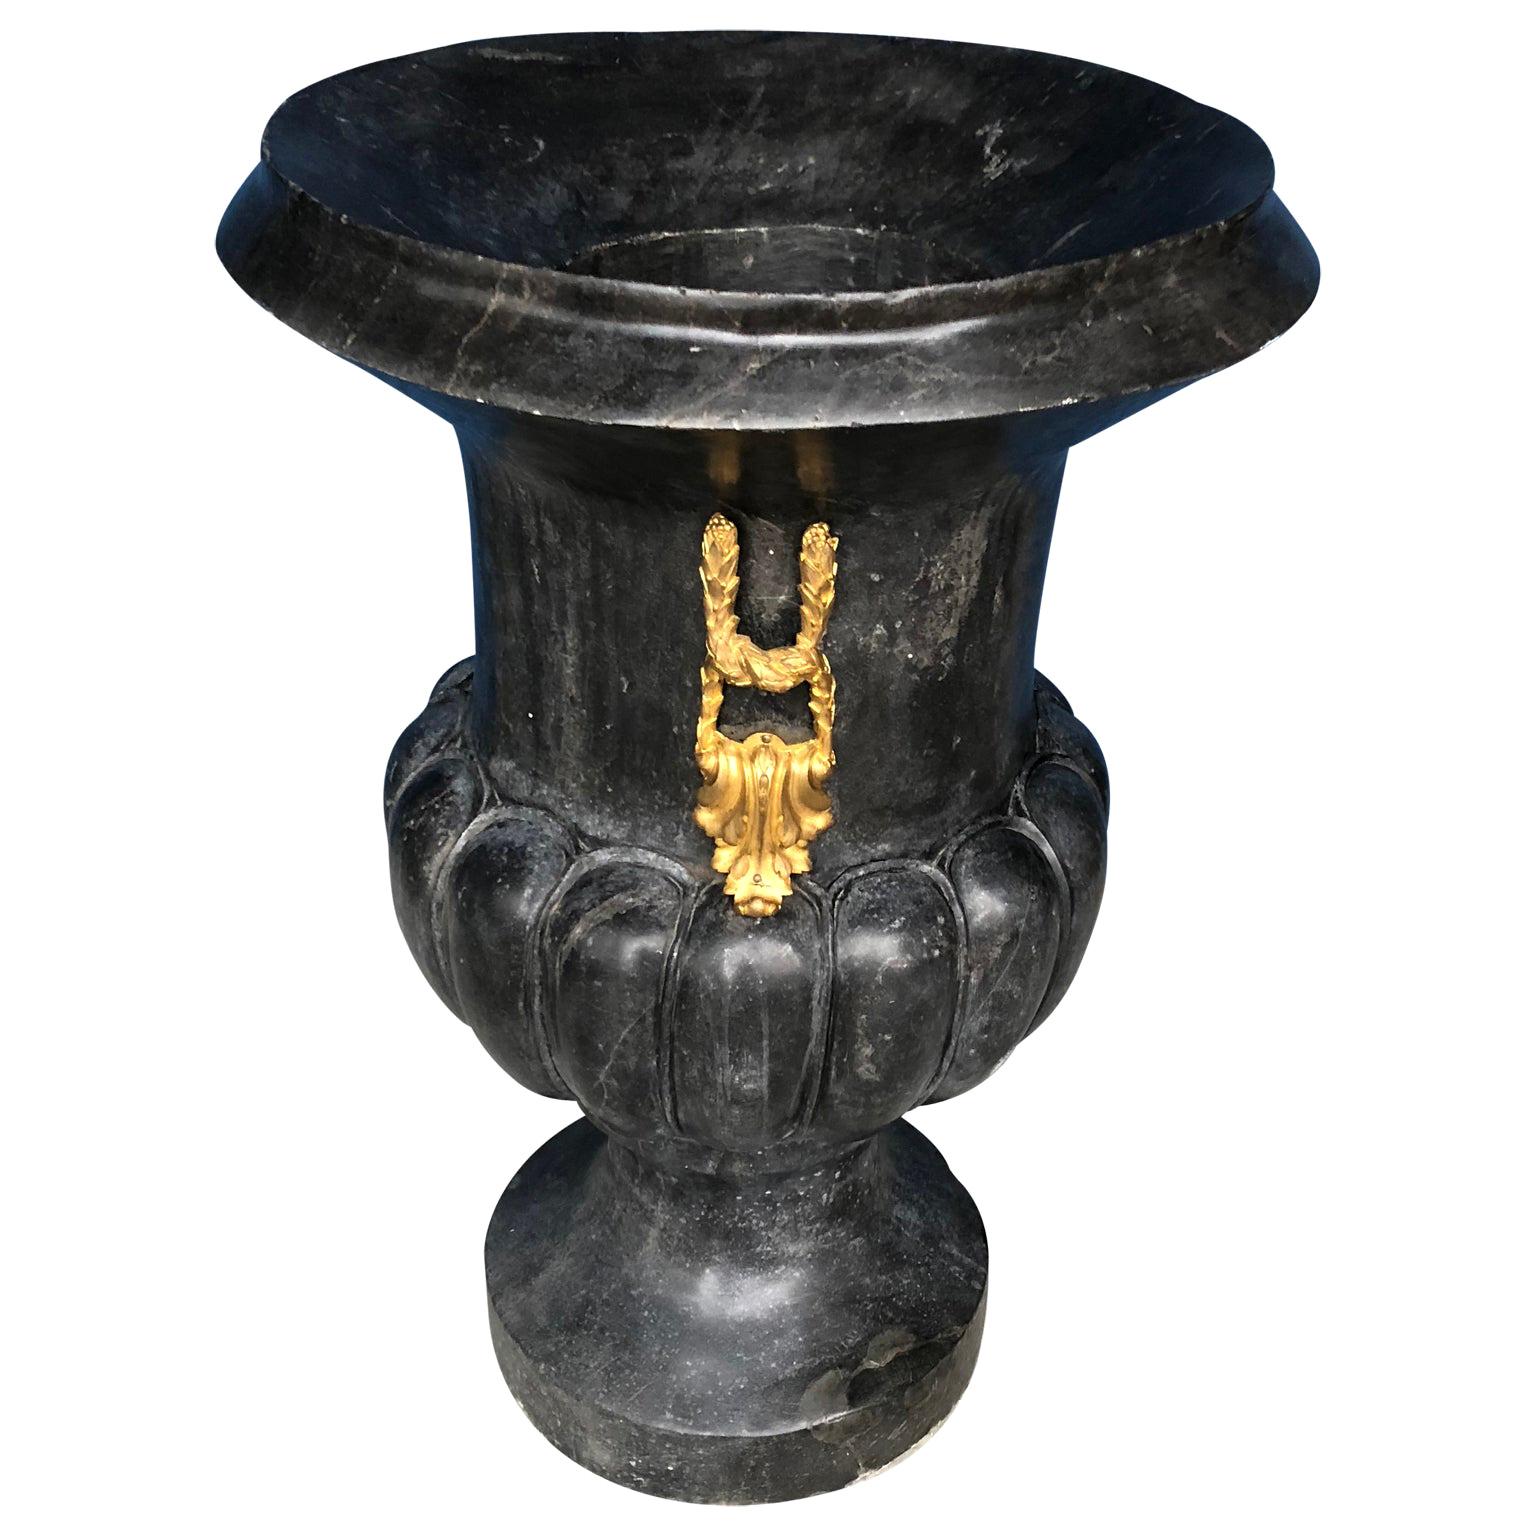 Grande urne bulbeuse ou vase de jardin en marbre noir italien avec dorure à l'or fin